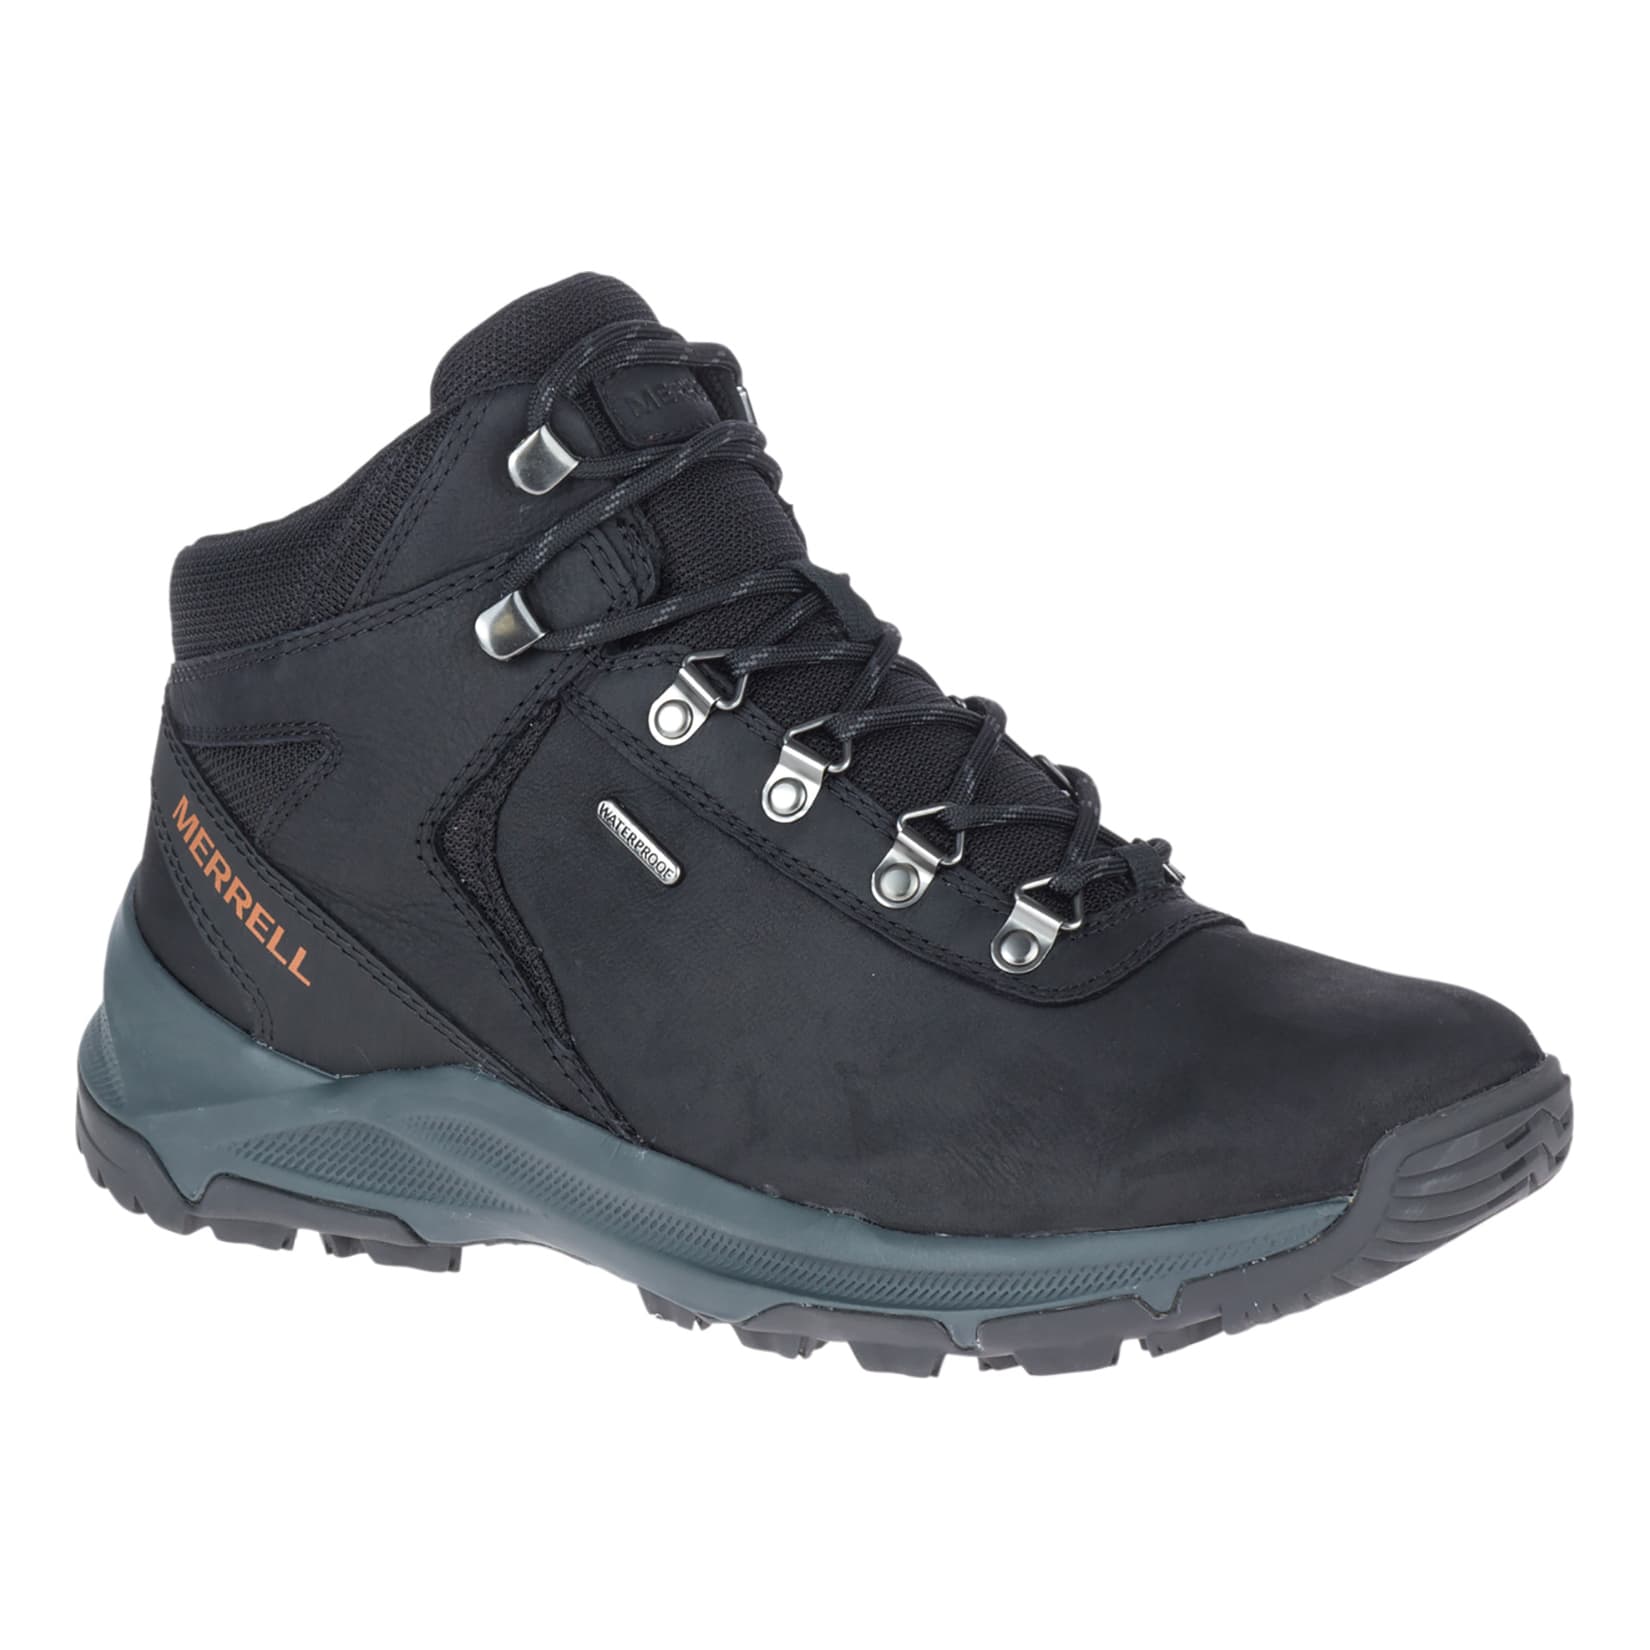 KEEN® Men's Koven Mid Waterproof Hiking Boots